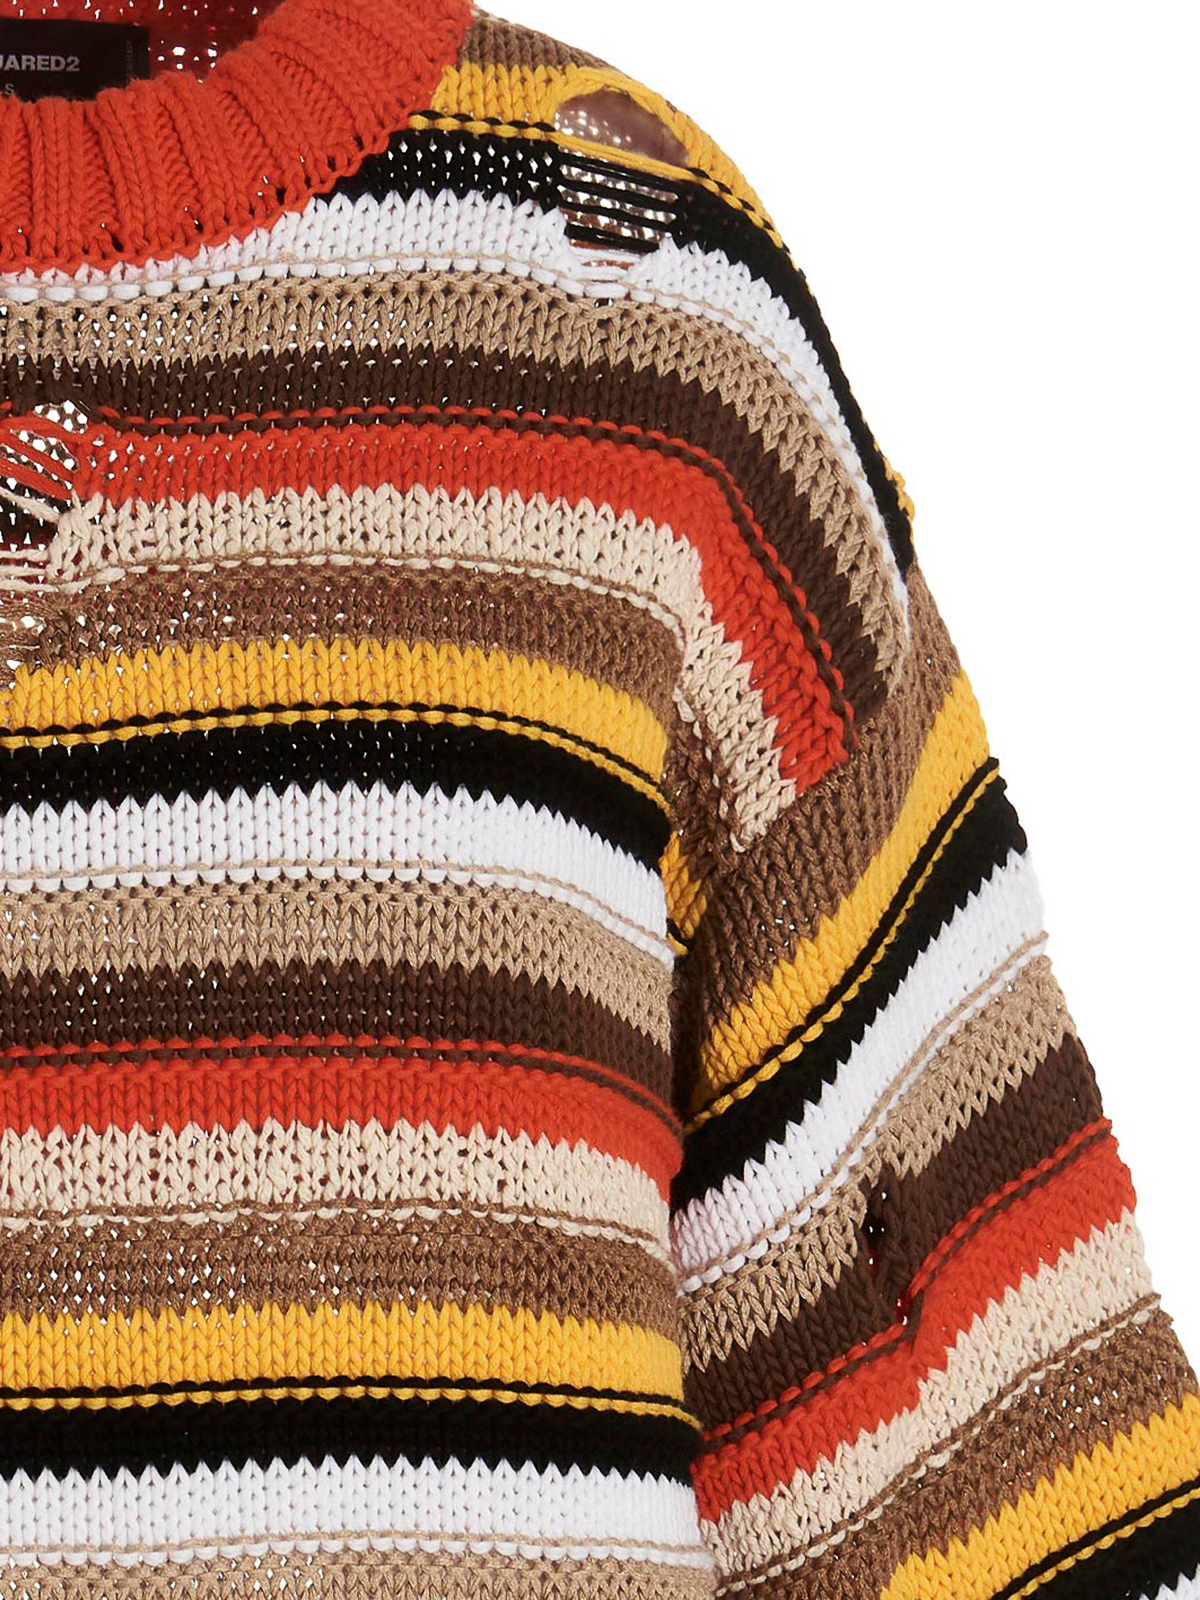 Shop Dsquared2 Multicolor Striped Sweater